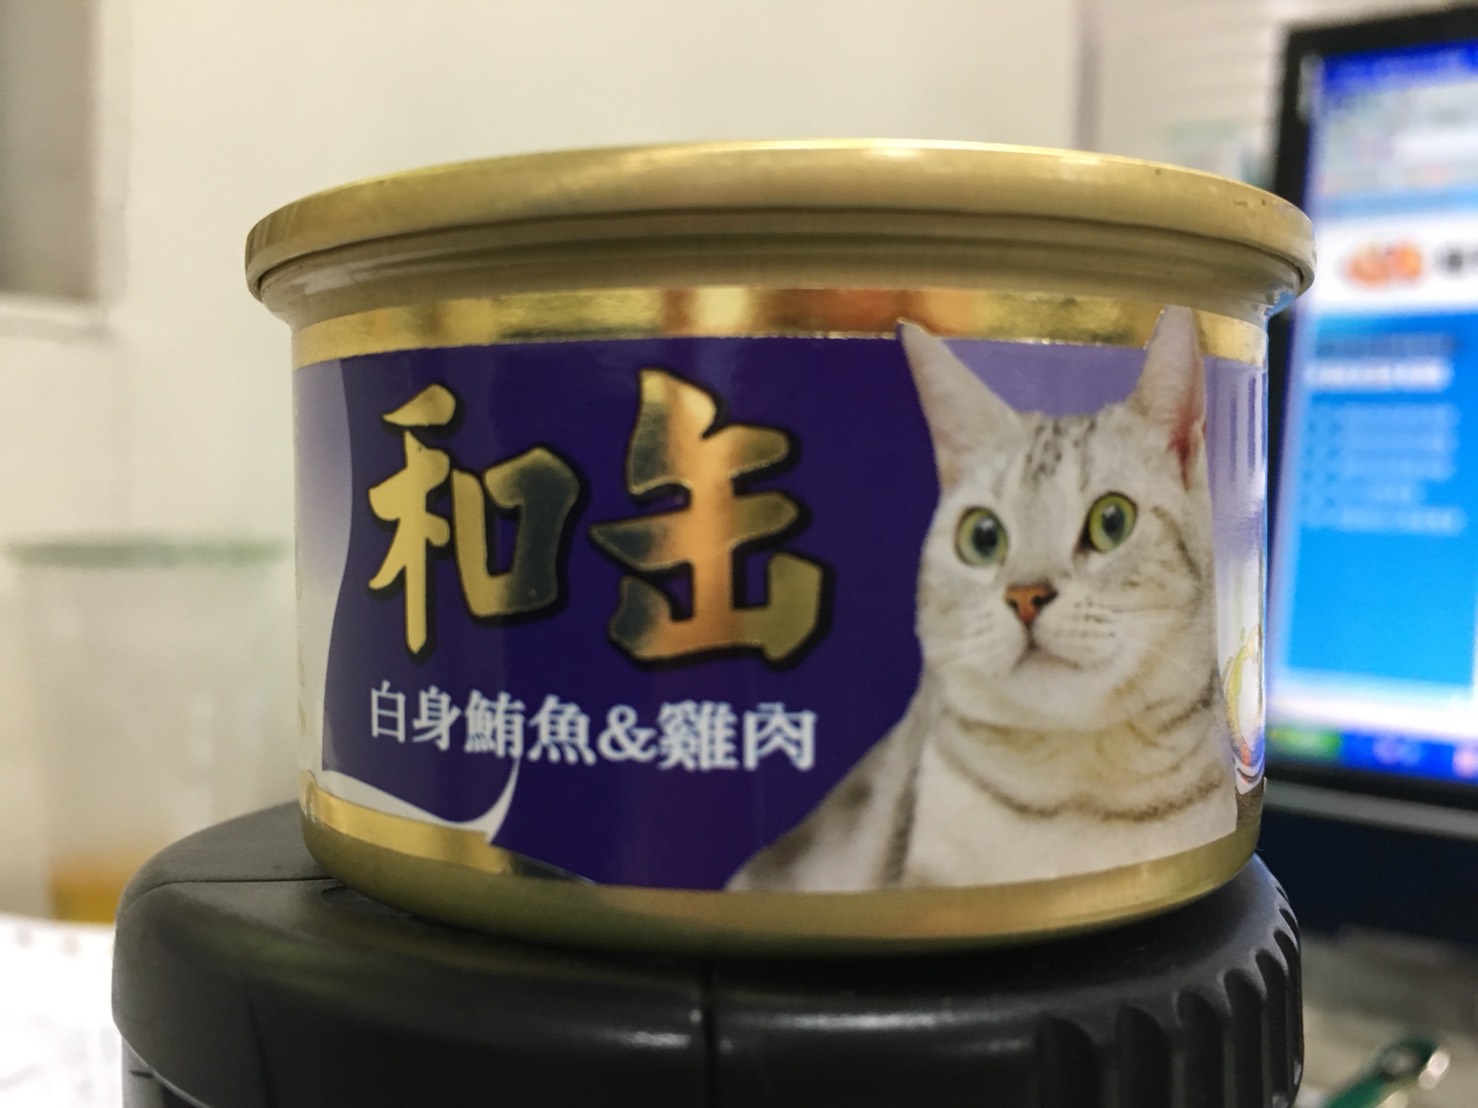 日式貓用和罐-鮪魚+雞肉
Ho Kuan Tuna & Chicken